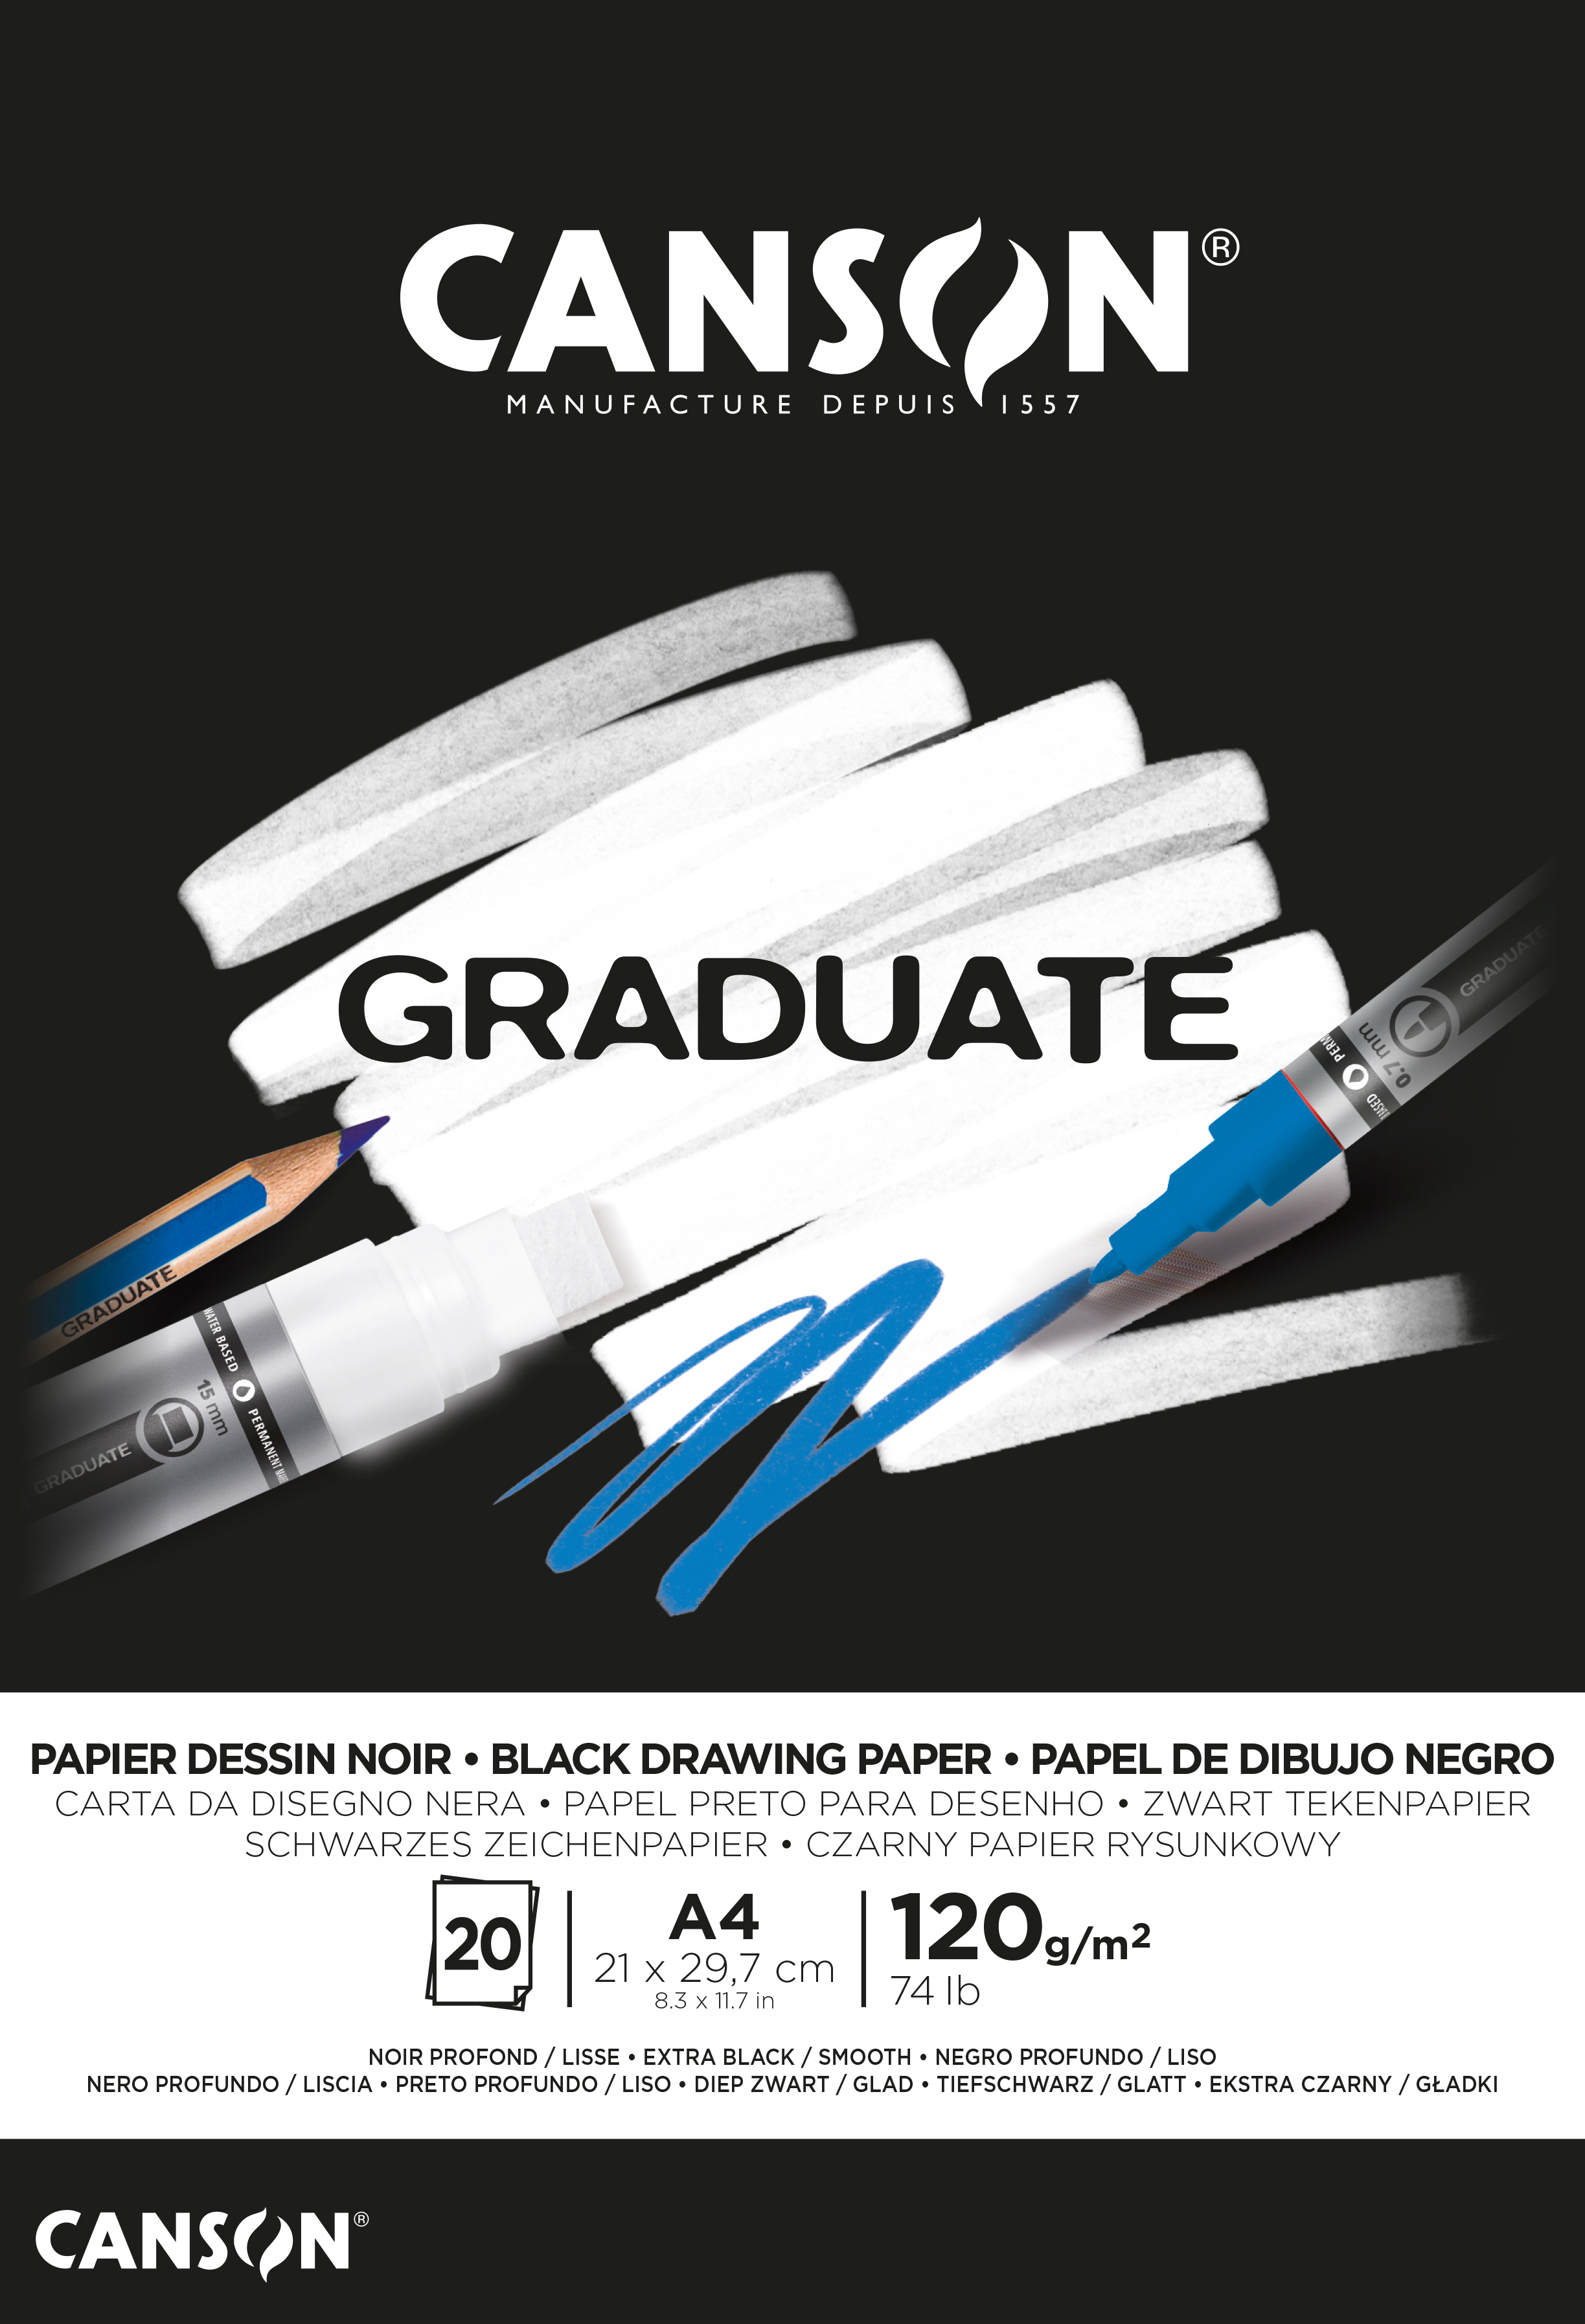 CANSON Graduate papier à dessin A4 400110386 20 flles, noire, 120g